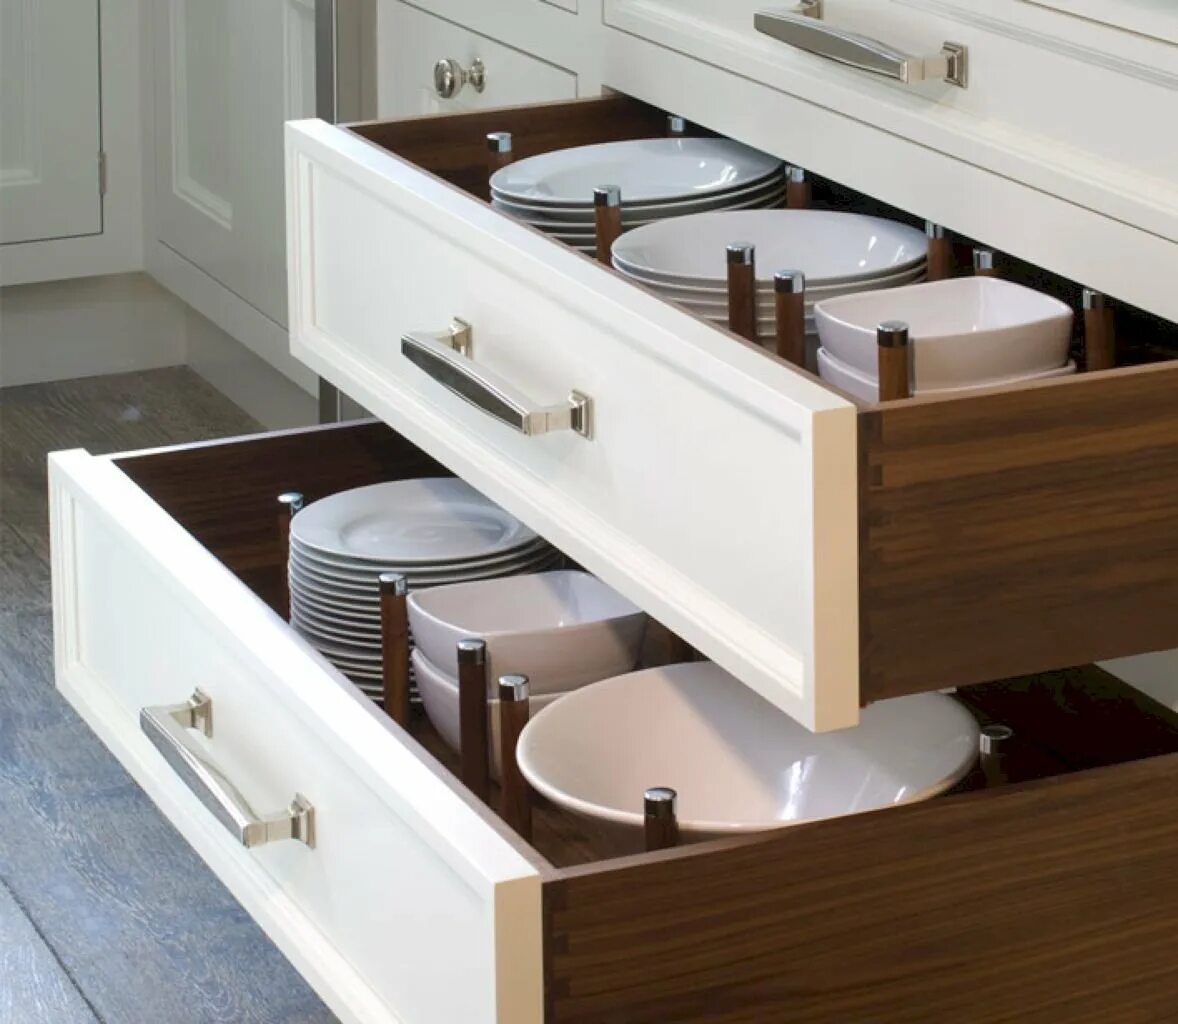 Купить ящики для хранения кухня. Кухонные ящики выдвижные. Ящики выдвижные для кухонных шкафов. Выдвижной ящик для посуды. Хранение посуды в выдвижных ящиках.